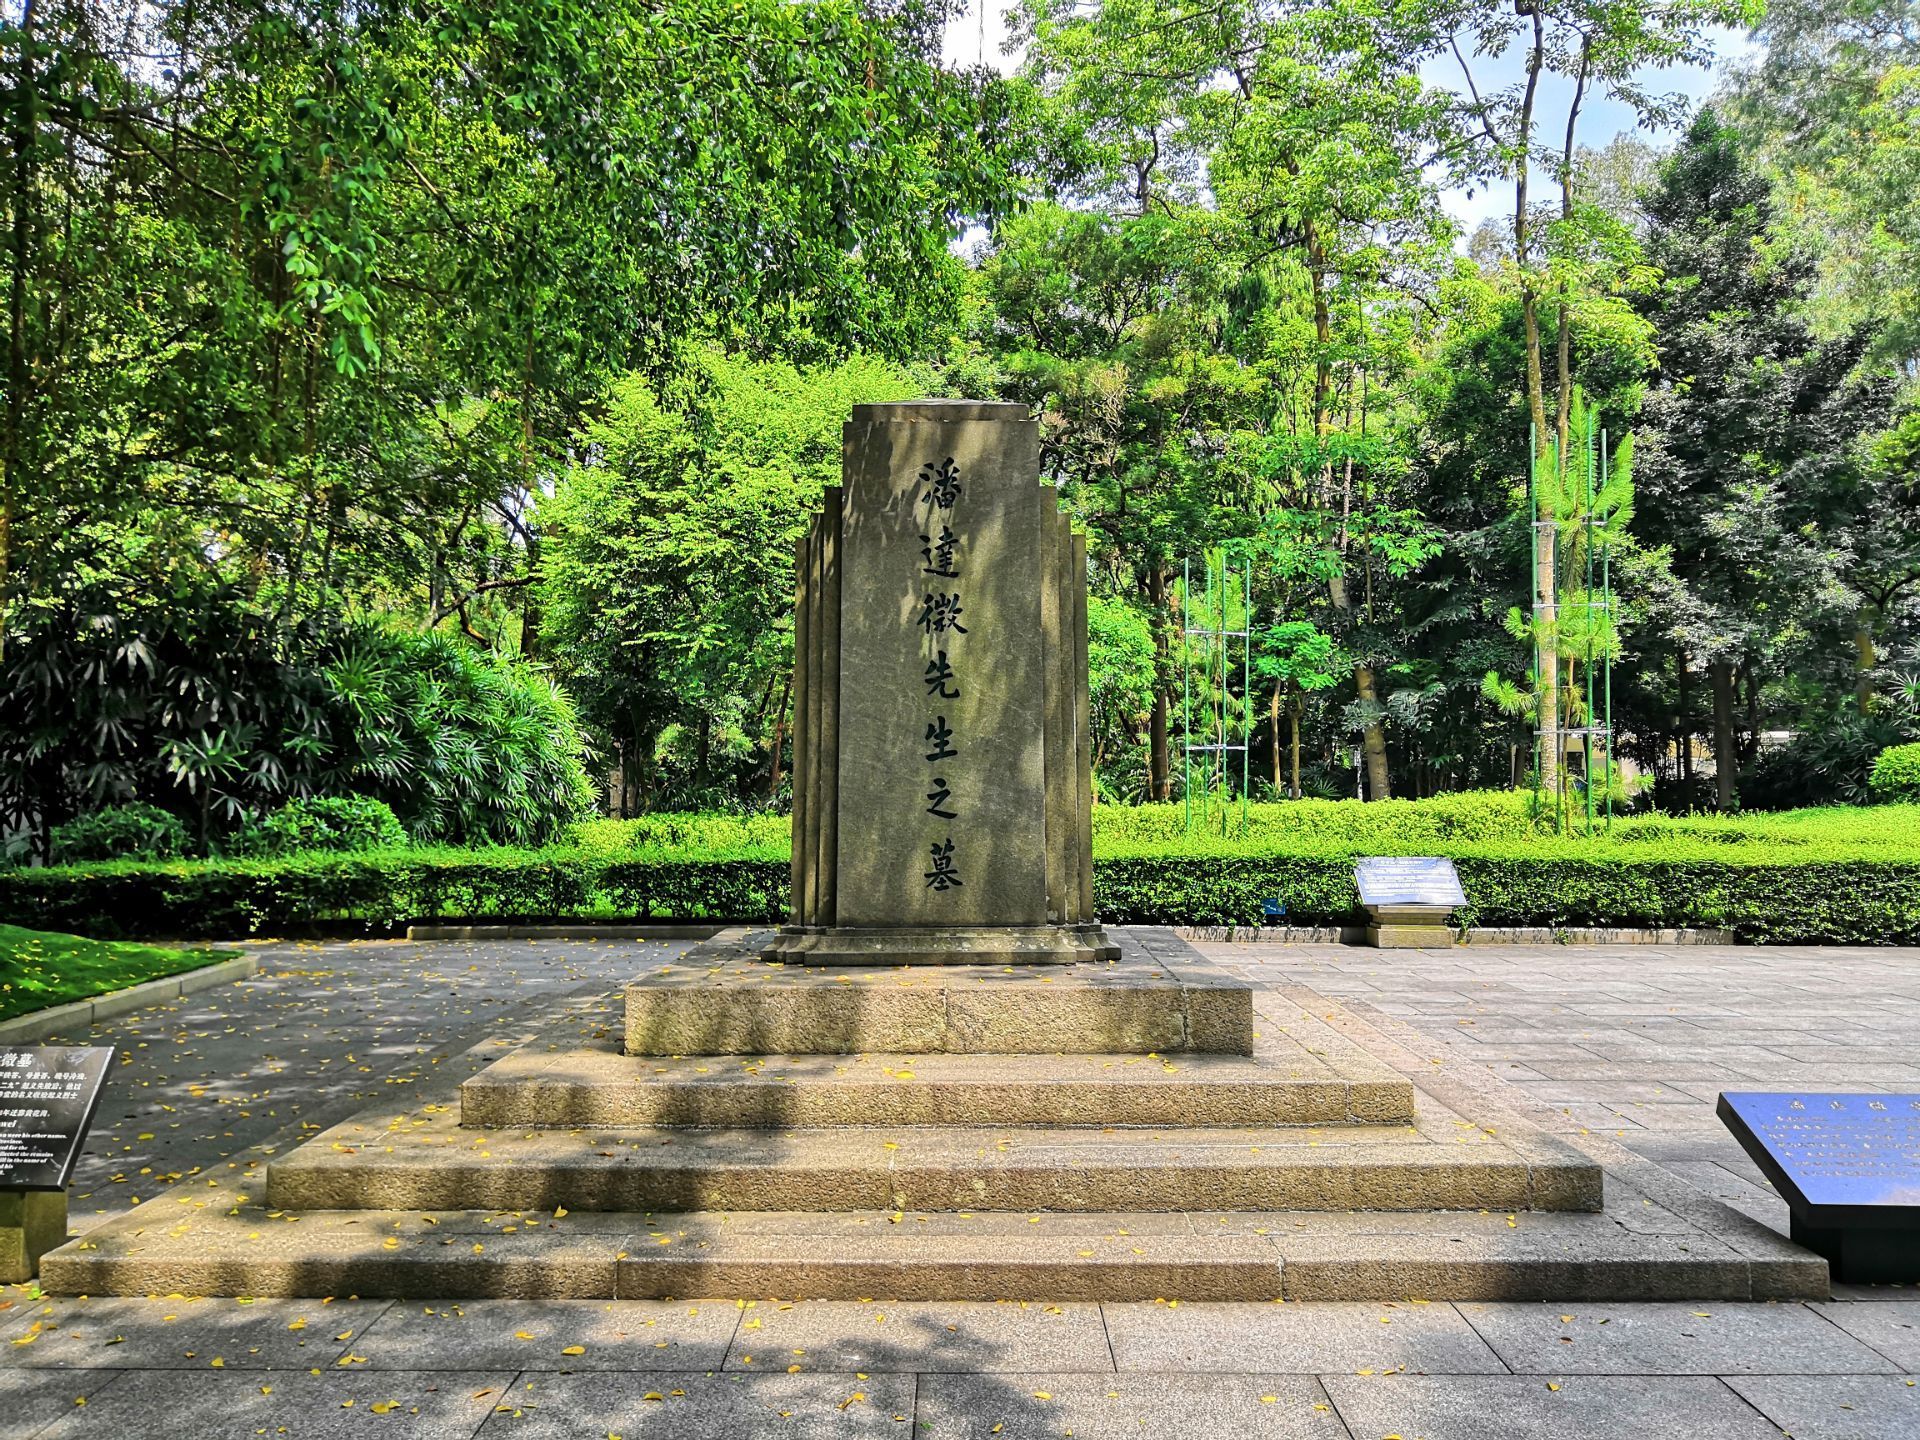 【携程攻略】广东黄花岗七十二烈士陵园景点,黄花岗七十二烈士陵园位于广州白云山，是国内最著名的烈士陵园之一，…